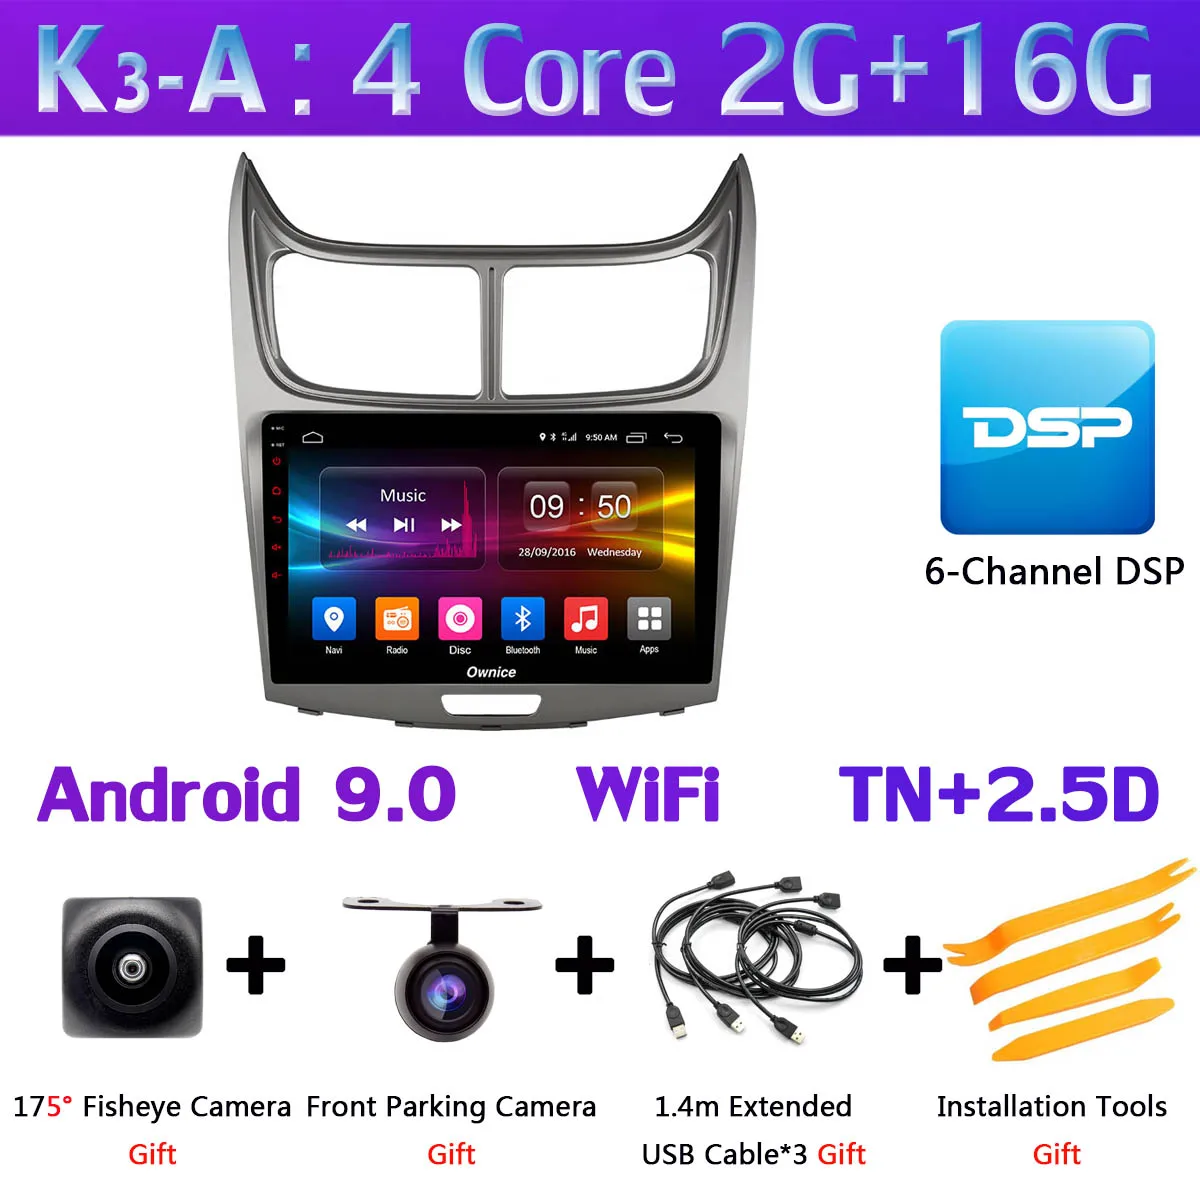 360 ° панорамная камера Android 9,0 4G+ 64G Автомобильный мультимедийный плеер для Chevrolet Sail 2010 2011 2012 2013 gps компактное минирадио SPDIF CarPlay - Цвет: K3-A